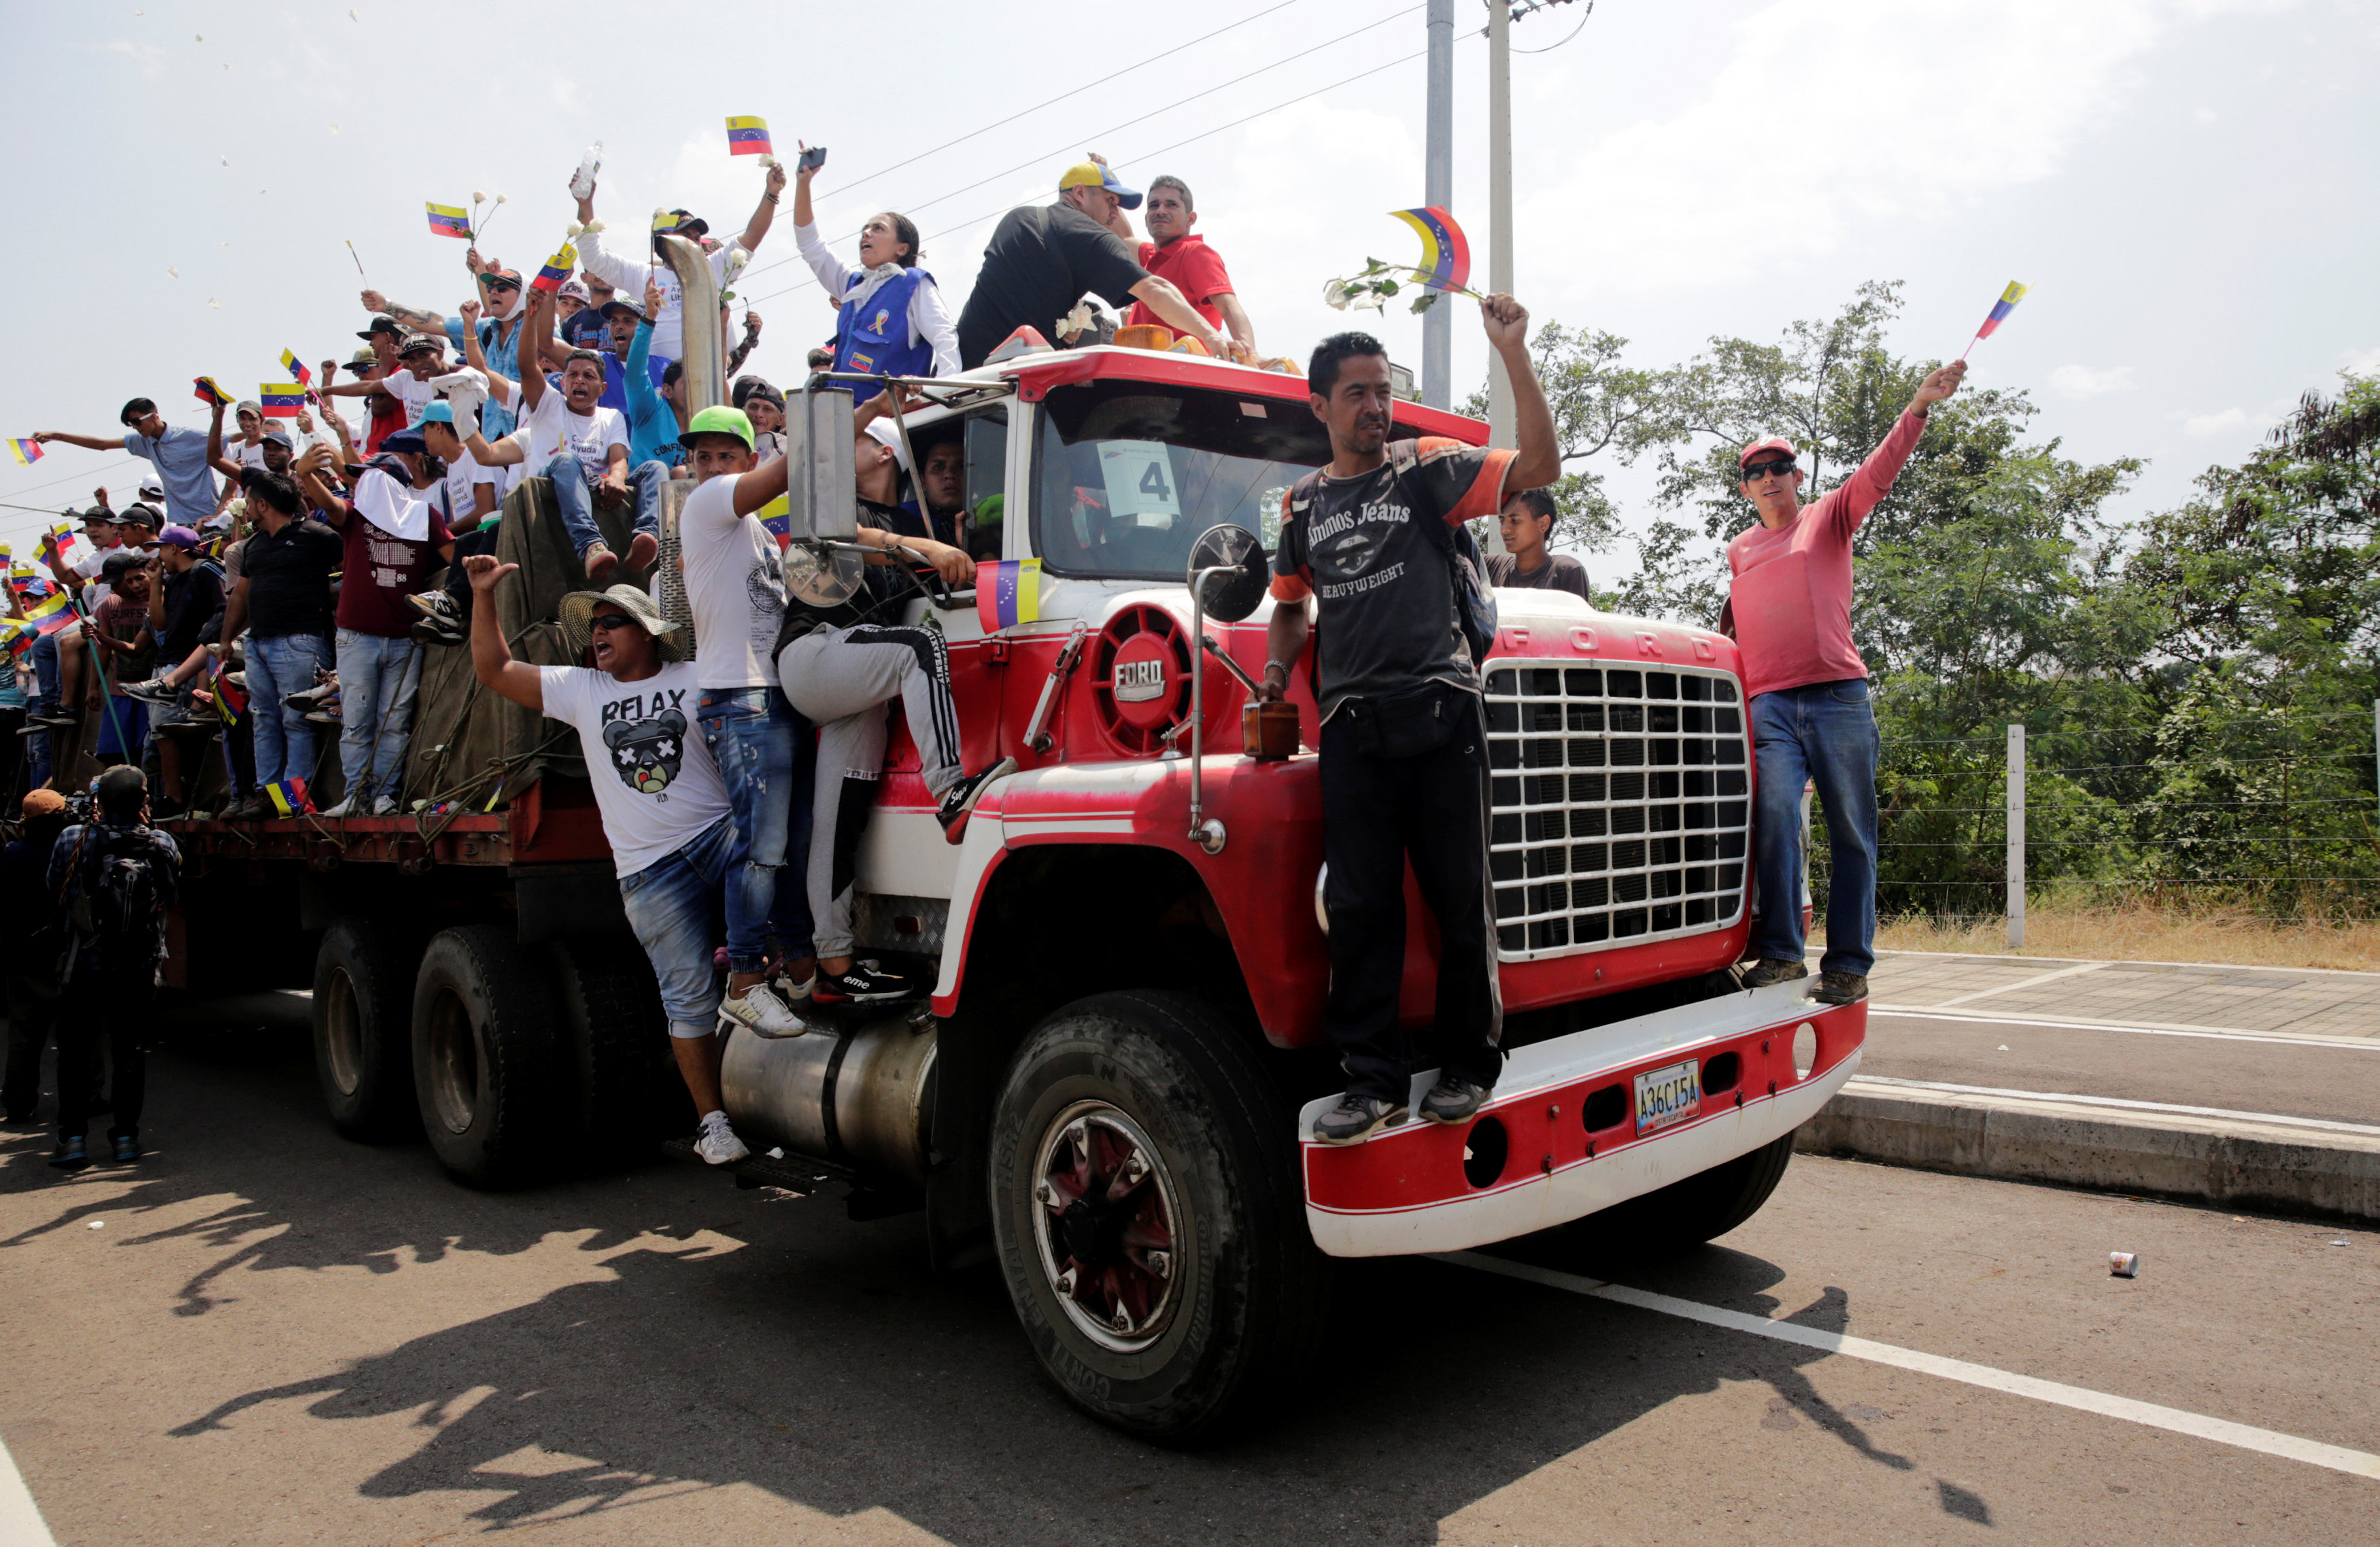 FOTOS: Avanzan los camiones que trasladan la ayuda humanitaria a Venezuela #23Feb